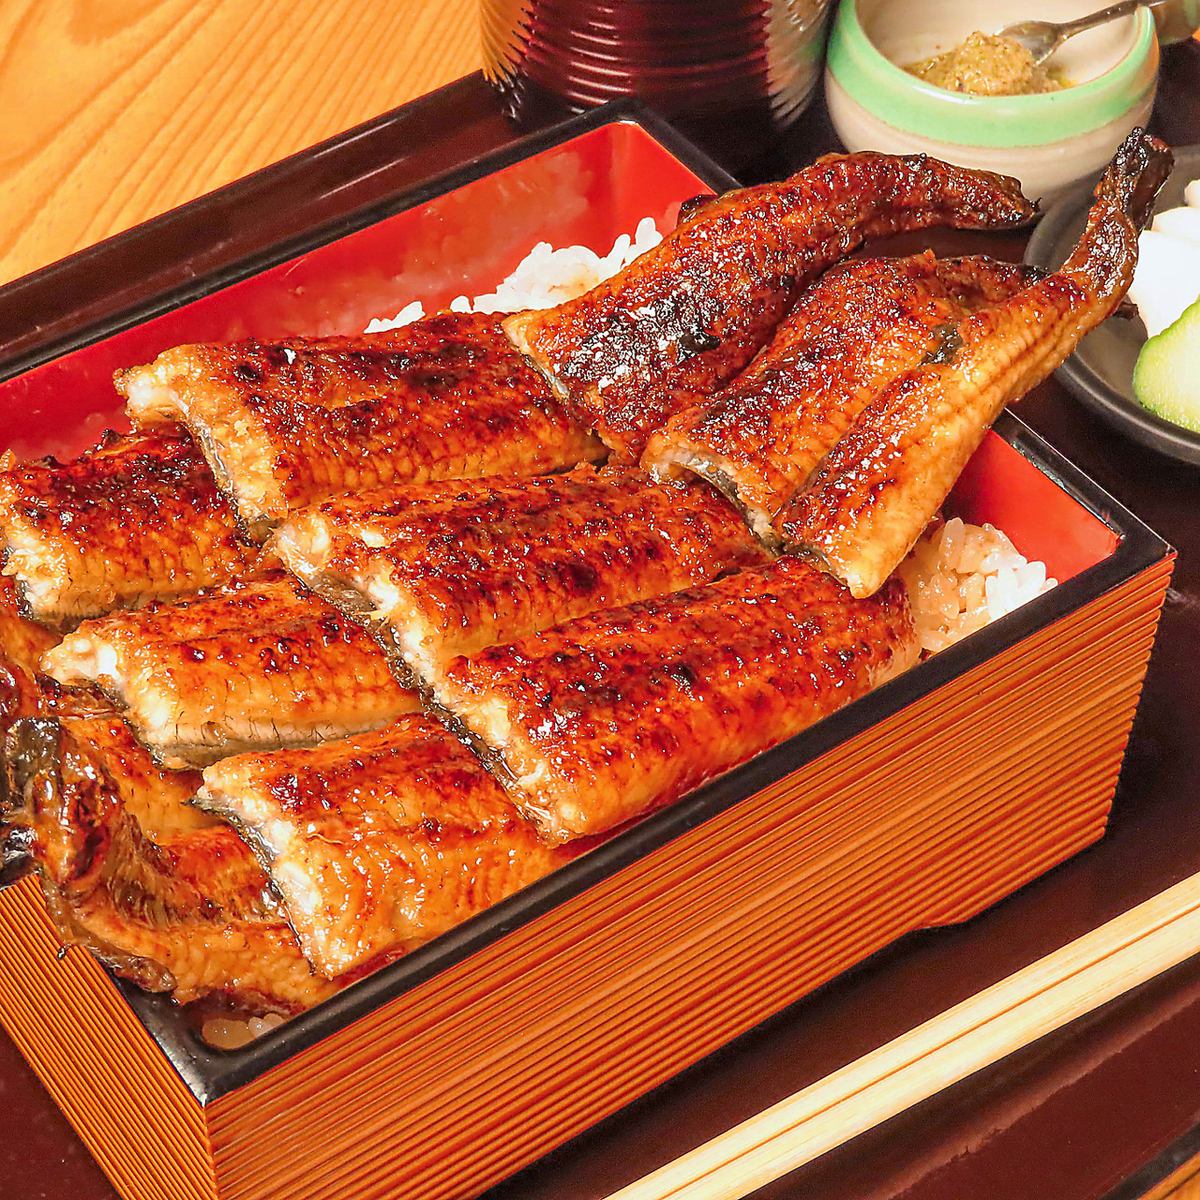 體驗關西風格的烤鰻魚和罕見的鰻魚配菜的新魅力。